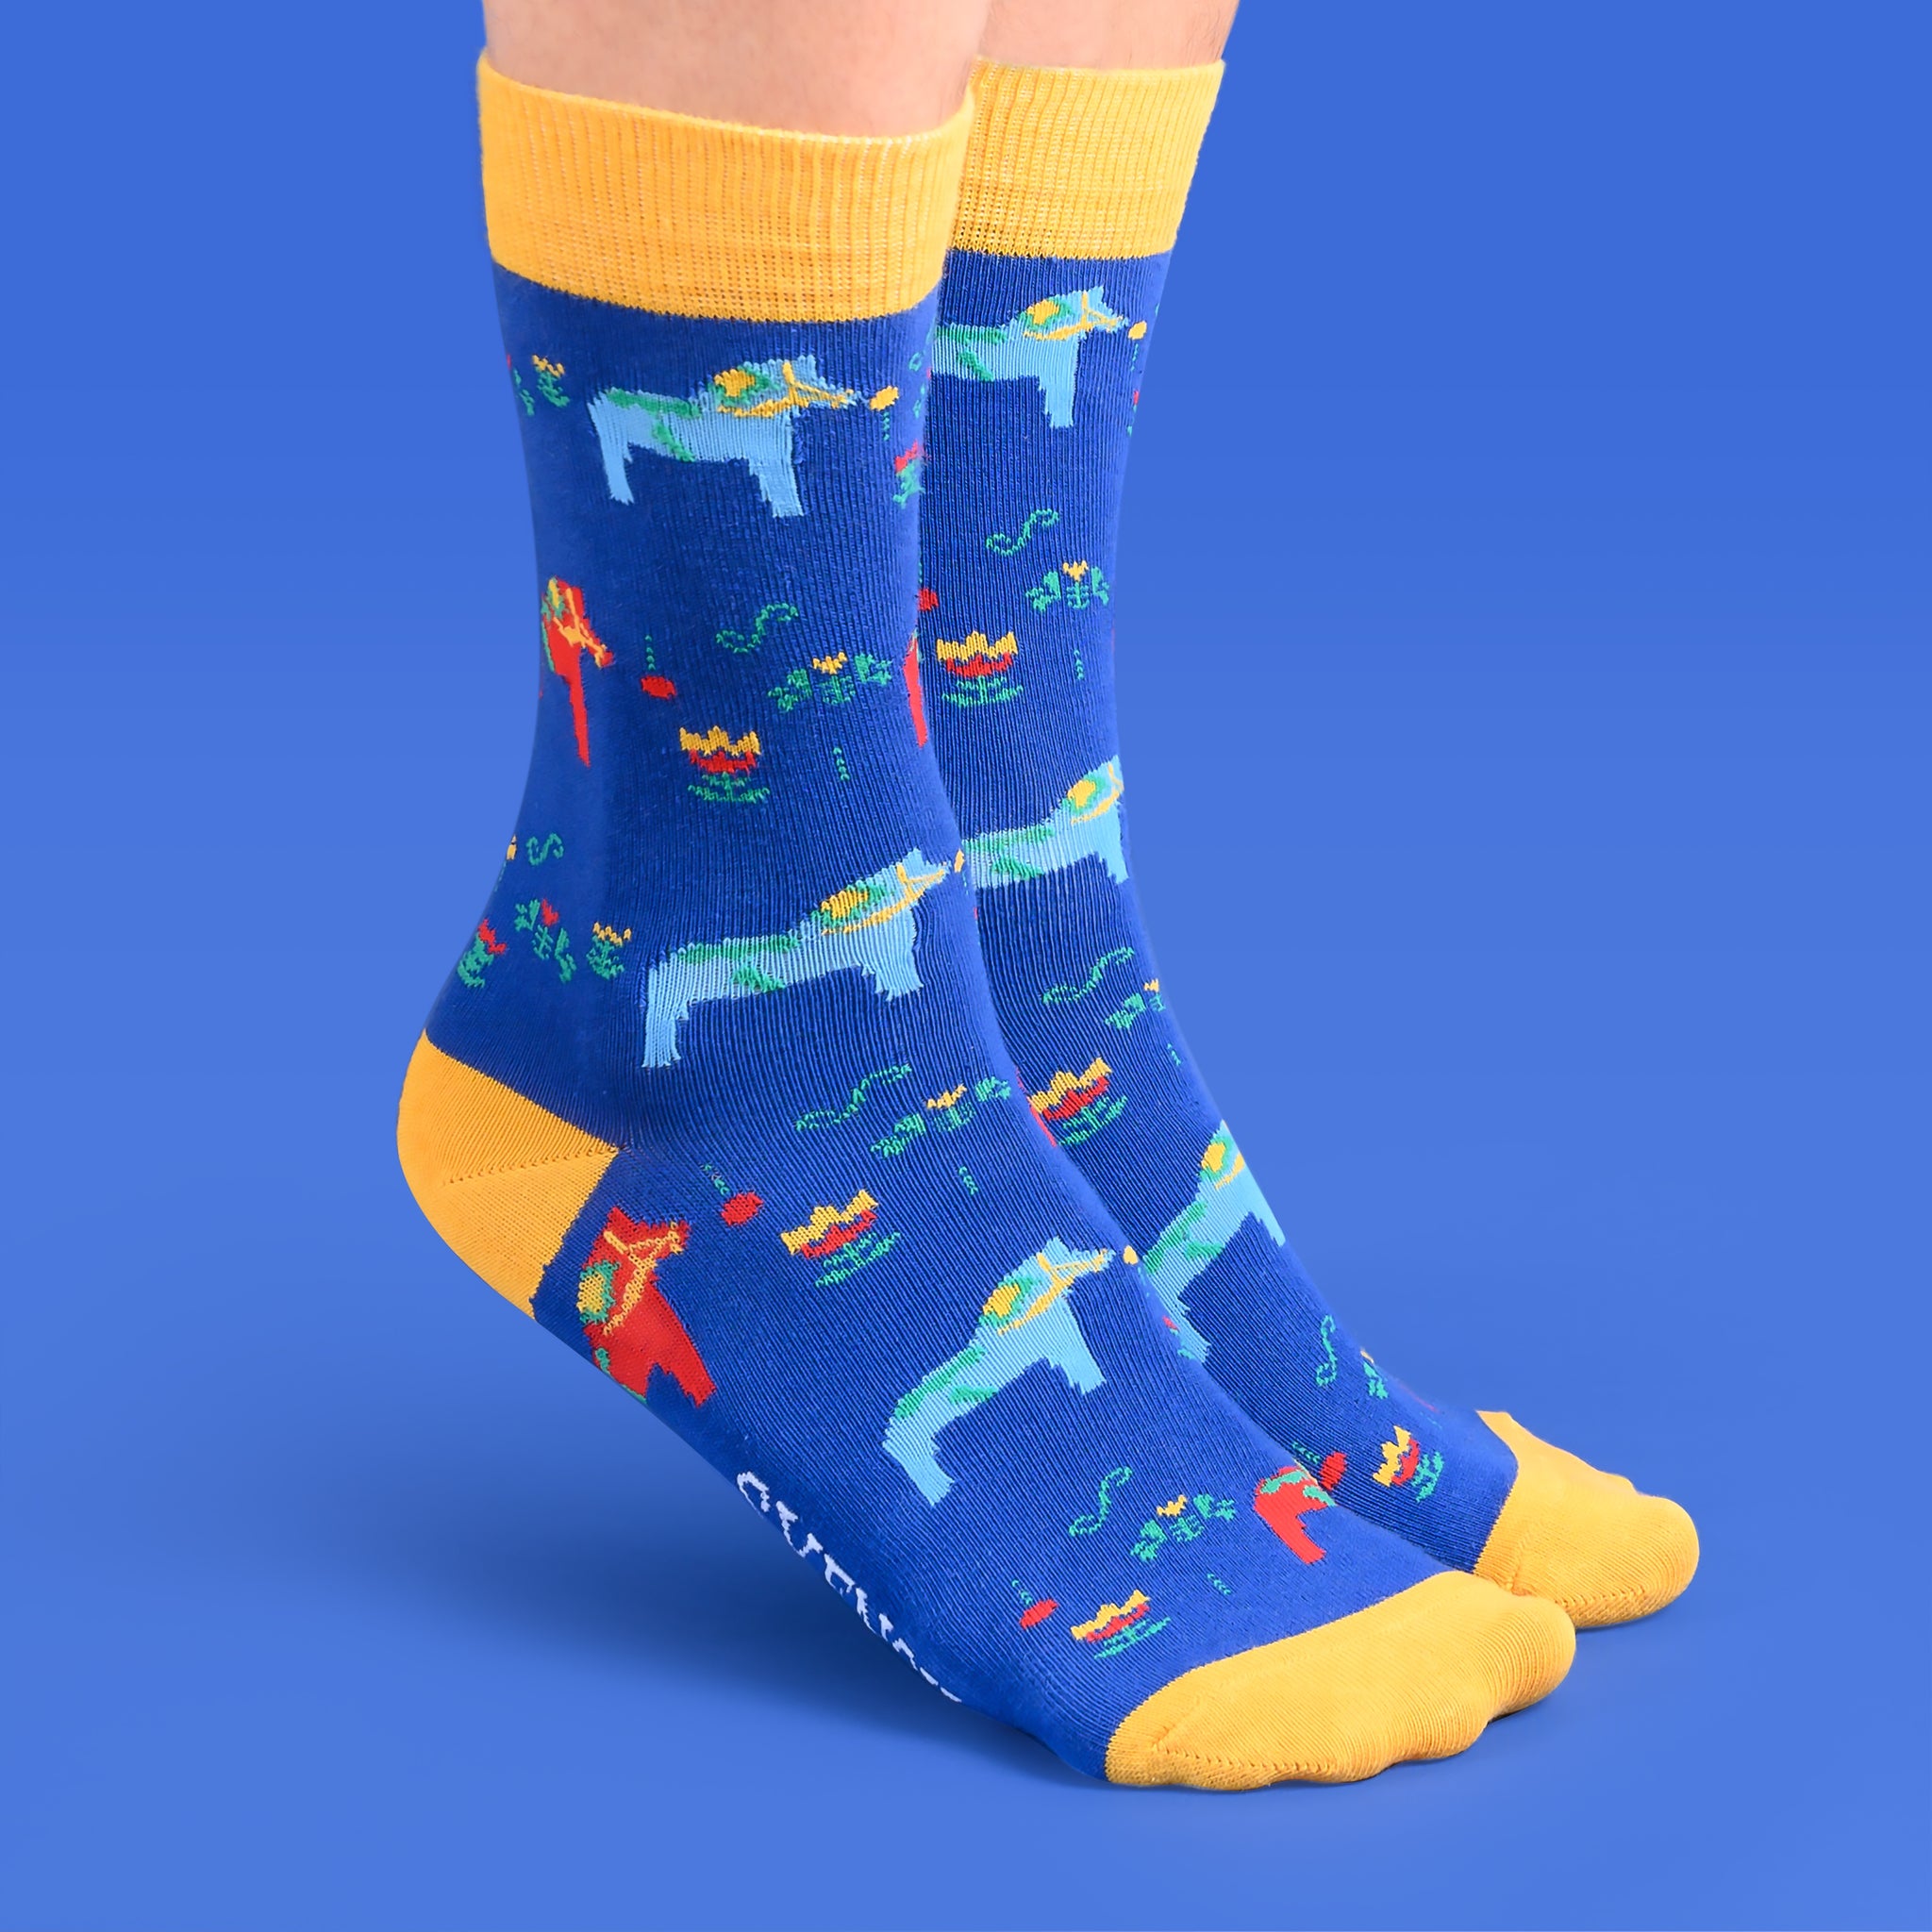 Socks Dala horse-Blue